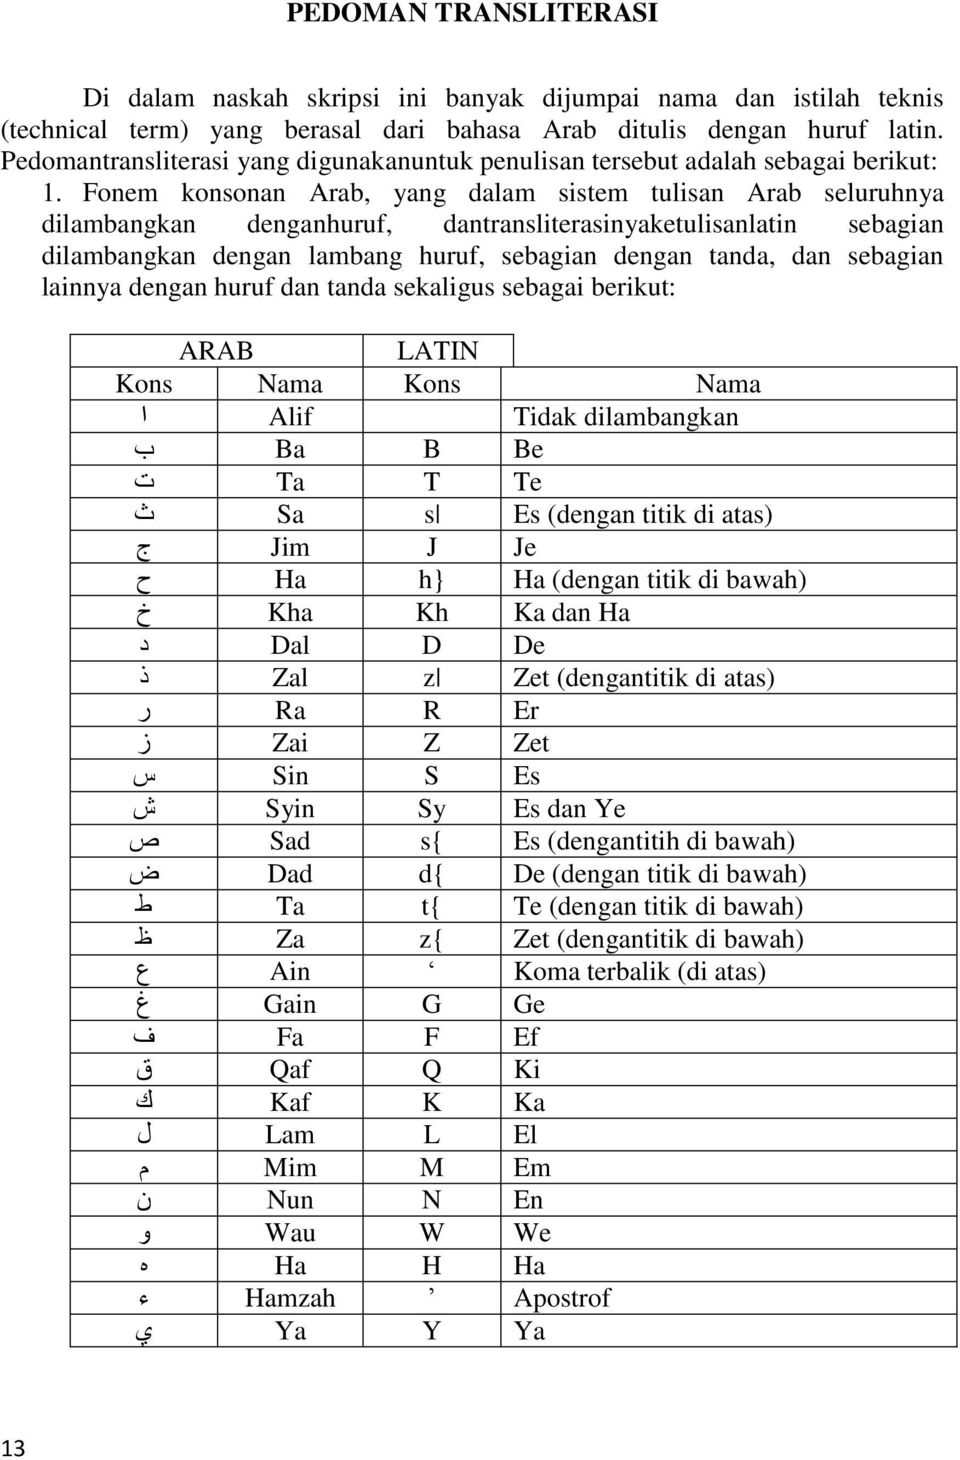 Fonem konsonan Arab, yang dalam sistem tulisan Arab seluruhnya dilambangkan denganhuruf, dantransliterasinyaketulisanlatin sebagian dilambangkan dengan lambang huruf, sebagian dengan tanda, dan